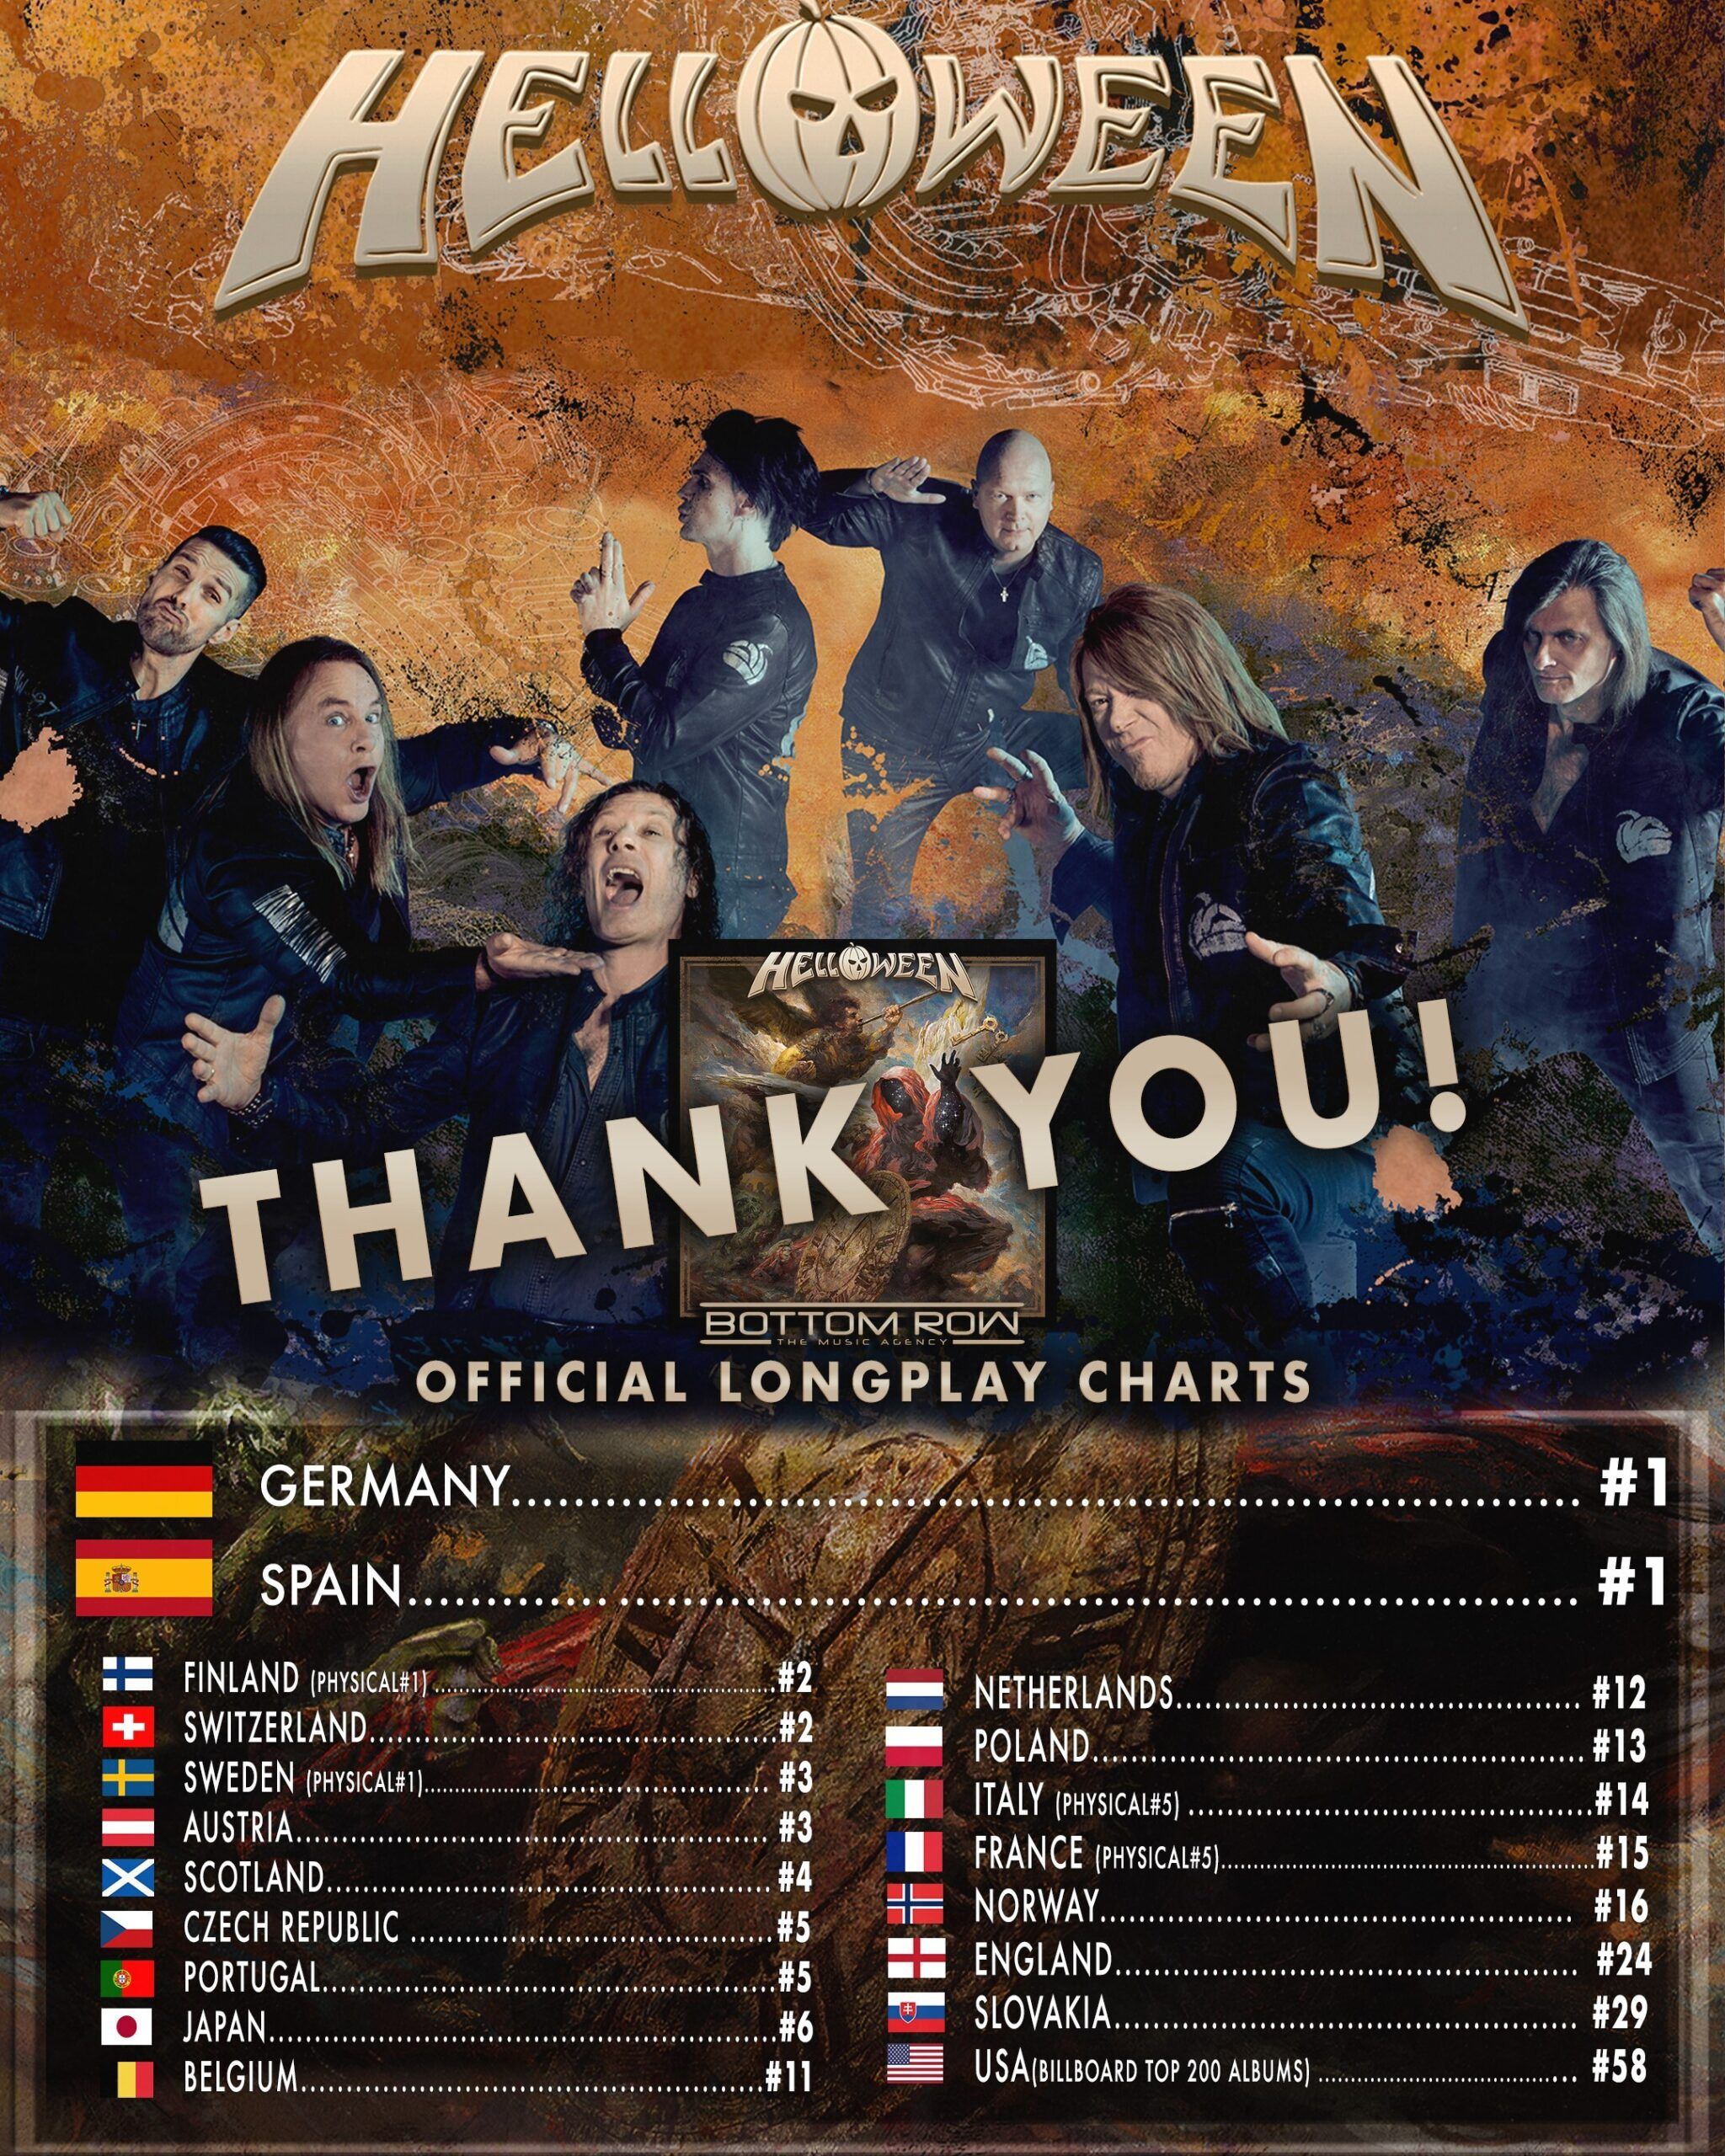 Weltweiter Einstieg in die Charts mit "Helloween"